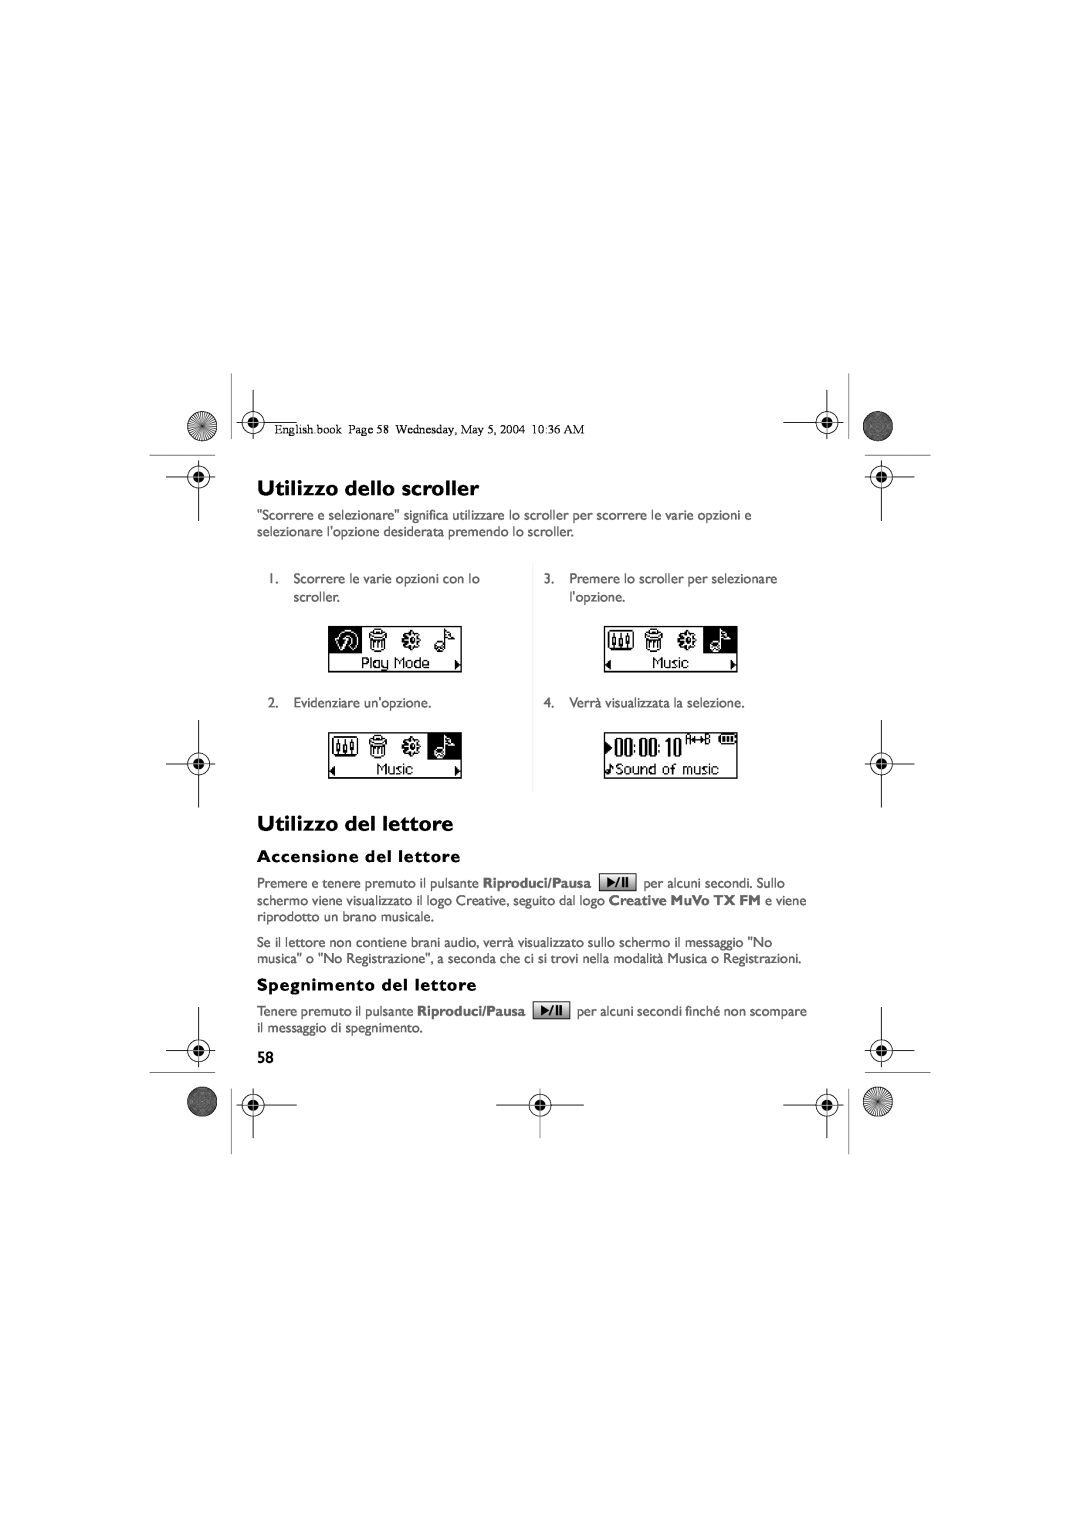 Musica CD Player manual Utilizzo dello scroller, Utilizzo del lettore, Accensione del lettore, Spegnimento del lettore 